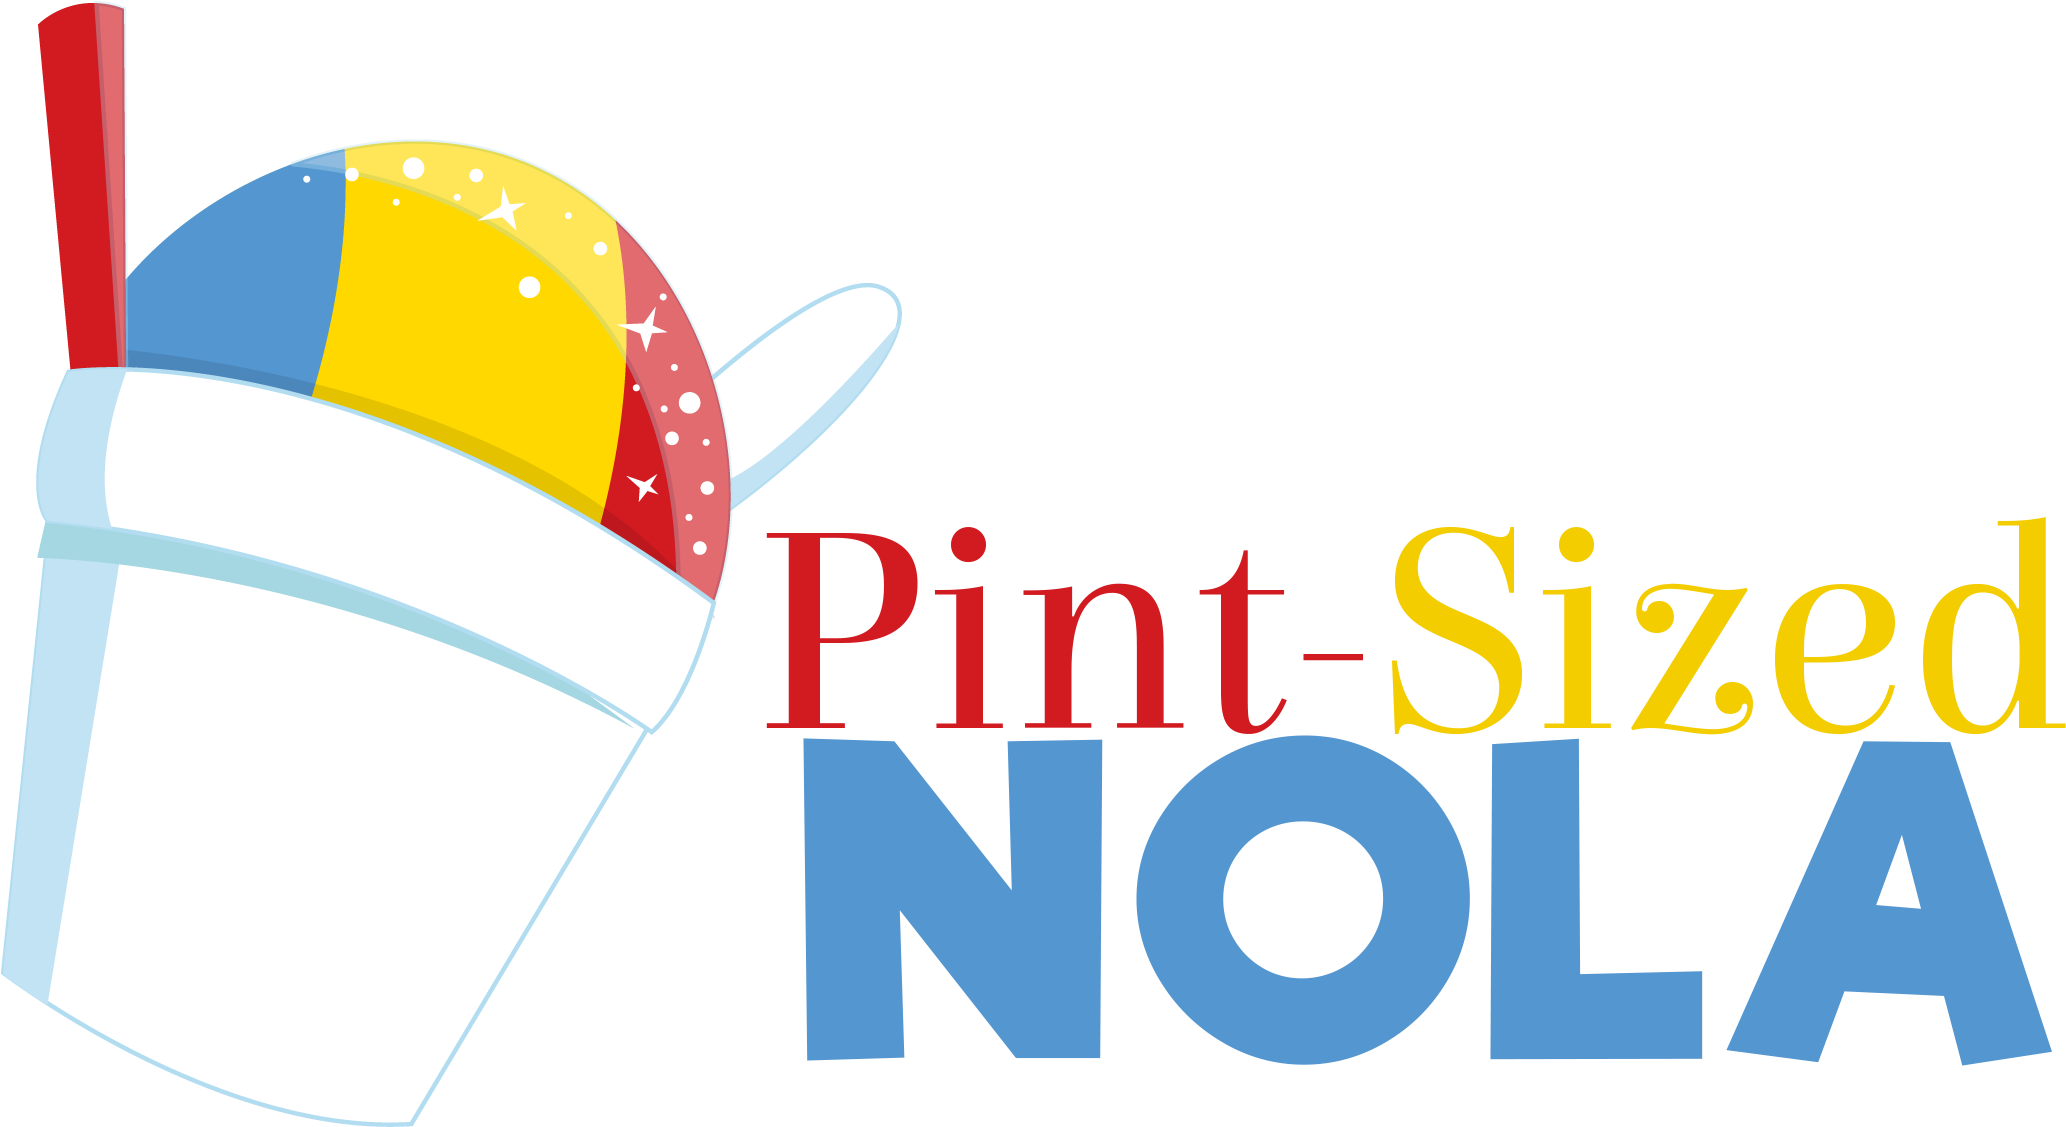 Pint-sized Nola - New Orleans (2620x1464)